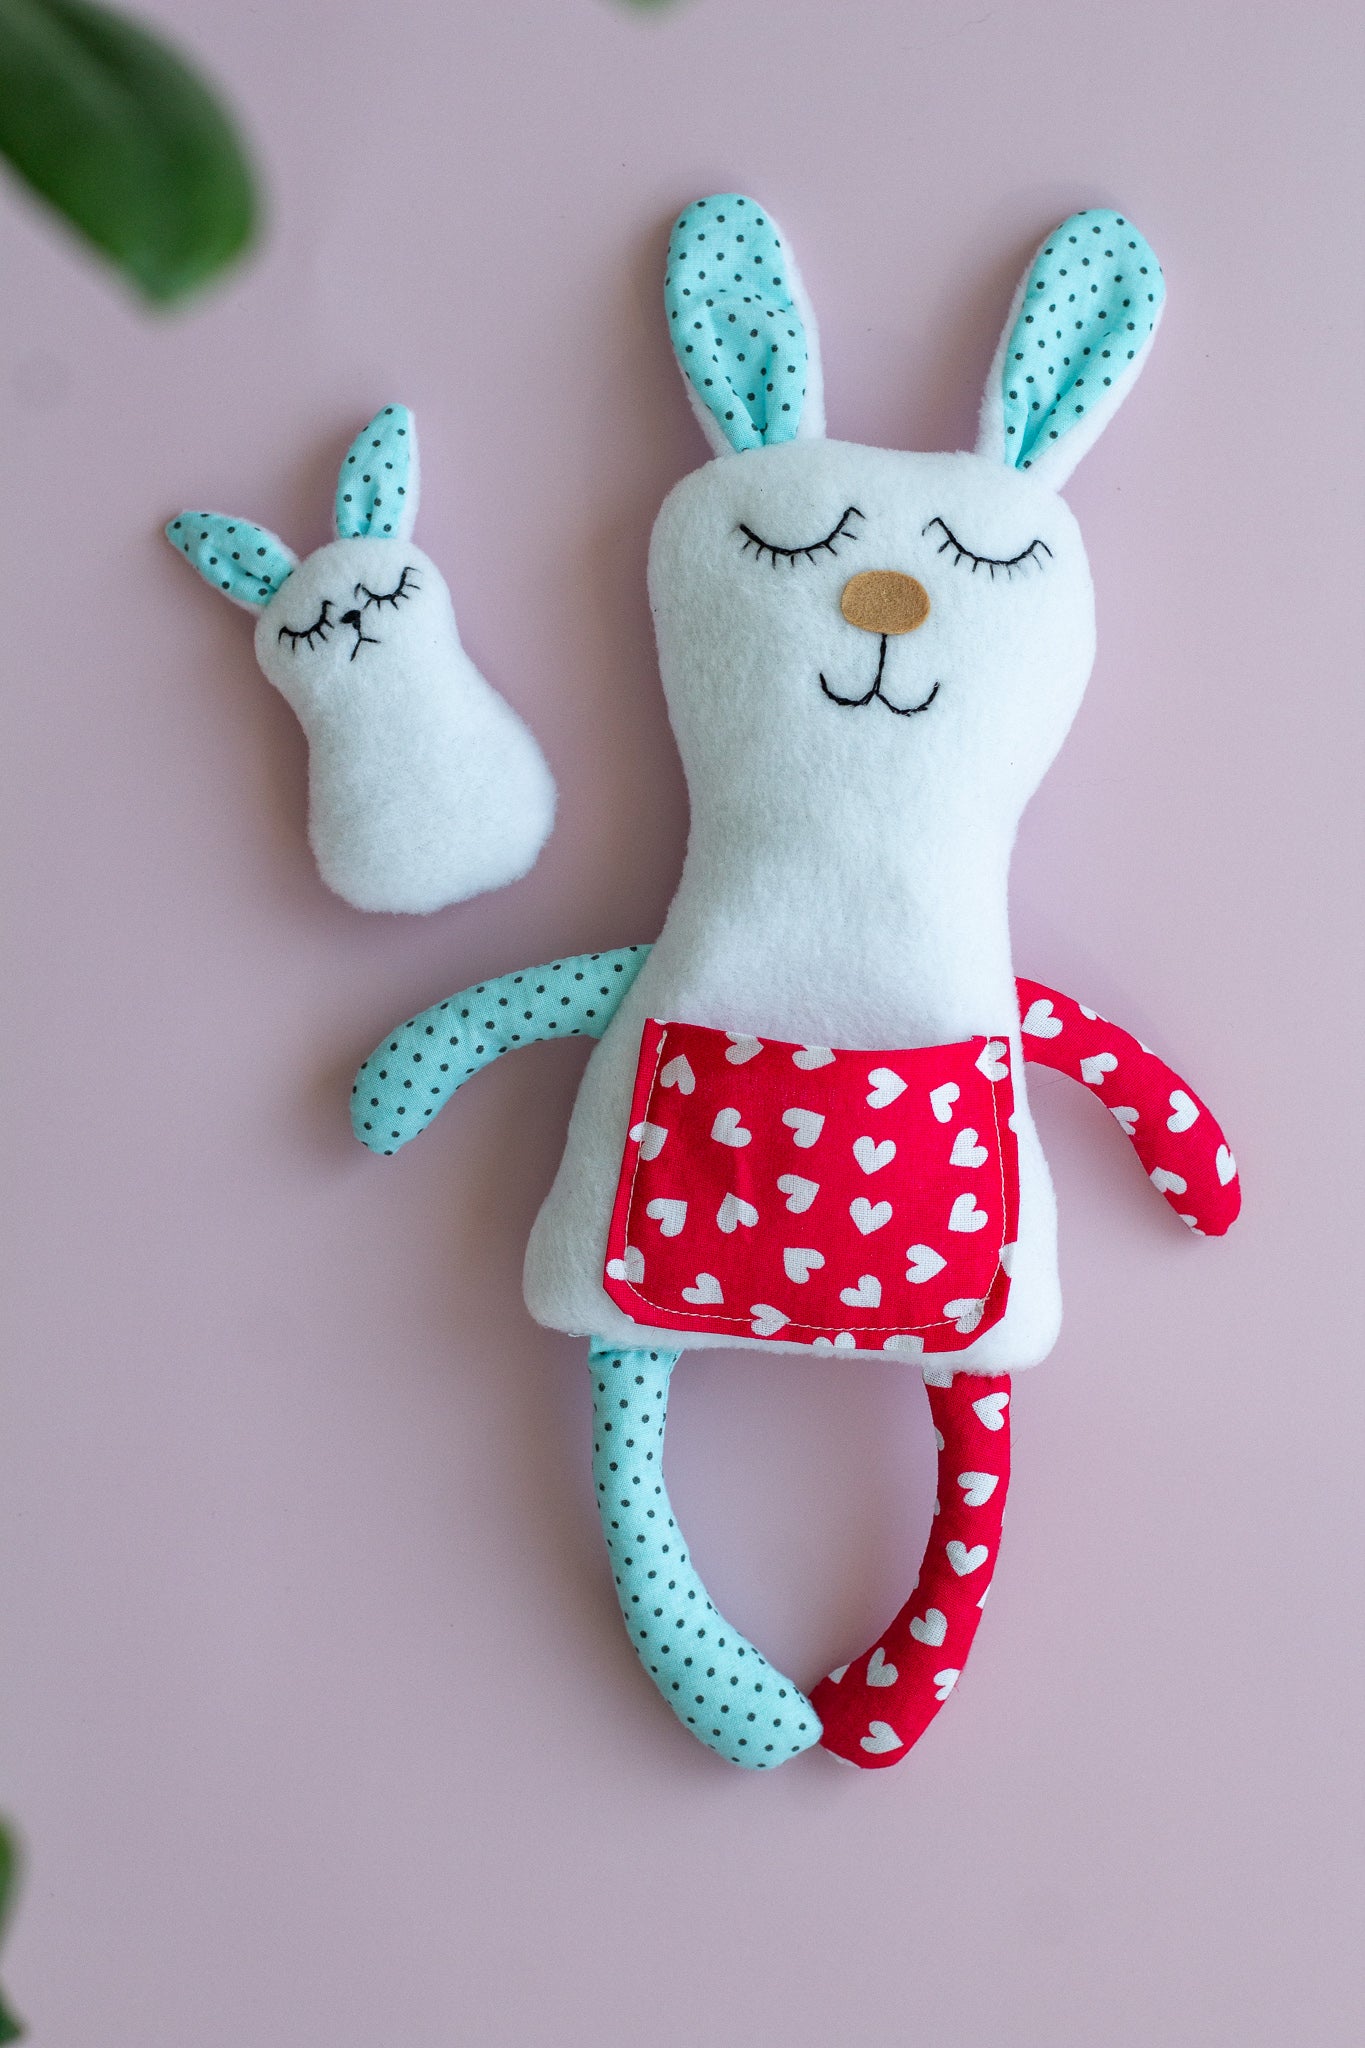 Stuffed animal, Baby Comforter Bunny, stuffed Bunny toy for sleep, Soft bunny